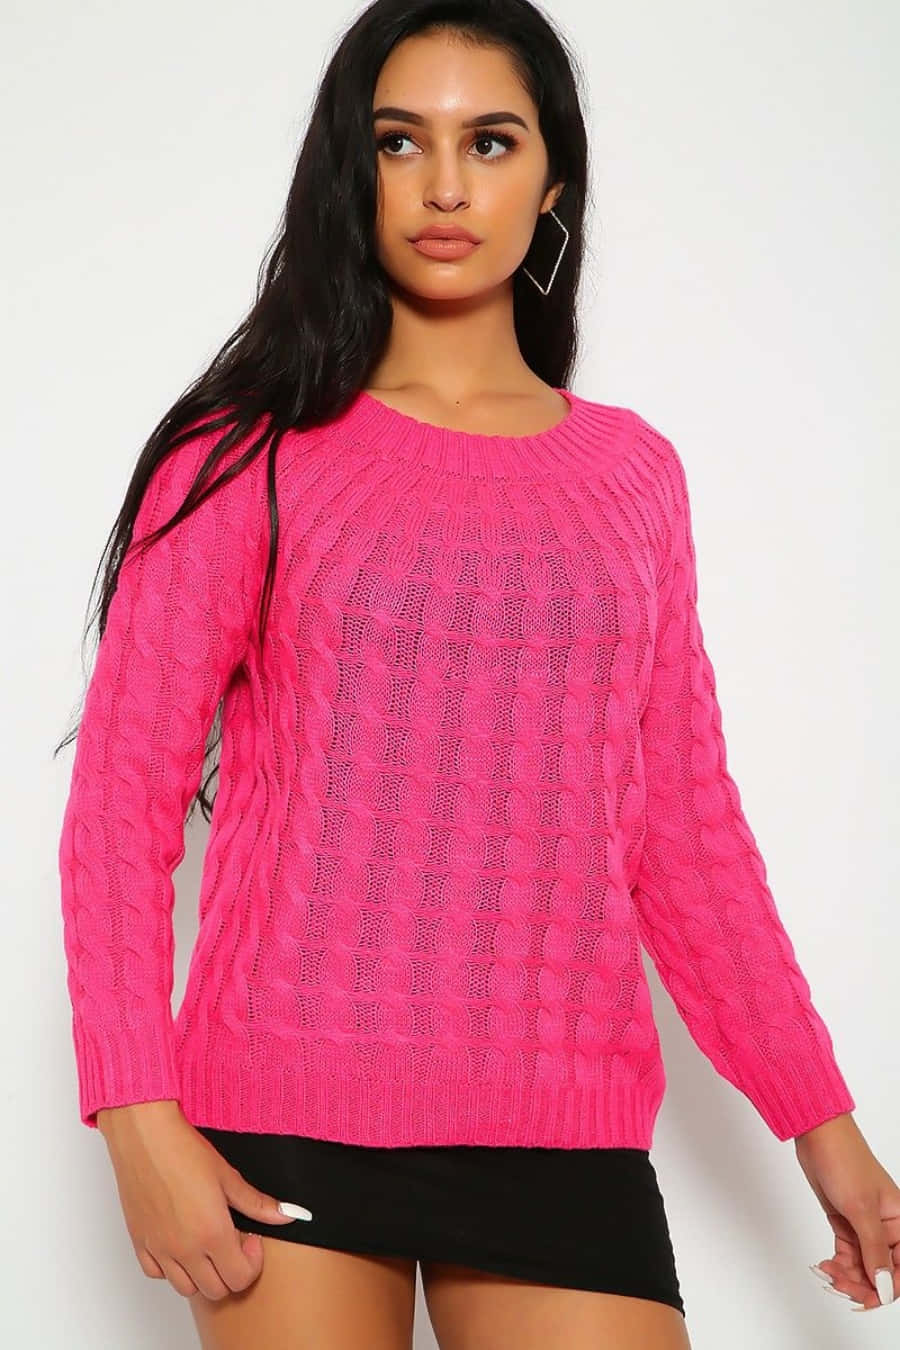 Mujercon Estilo Vistiendo Un Acogedor Suéter Rosa Fondo de pantalla